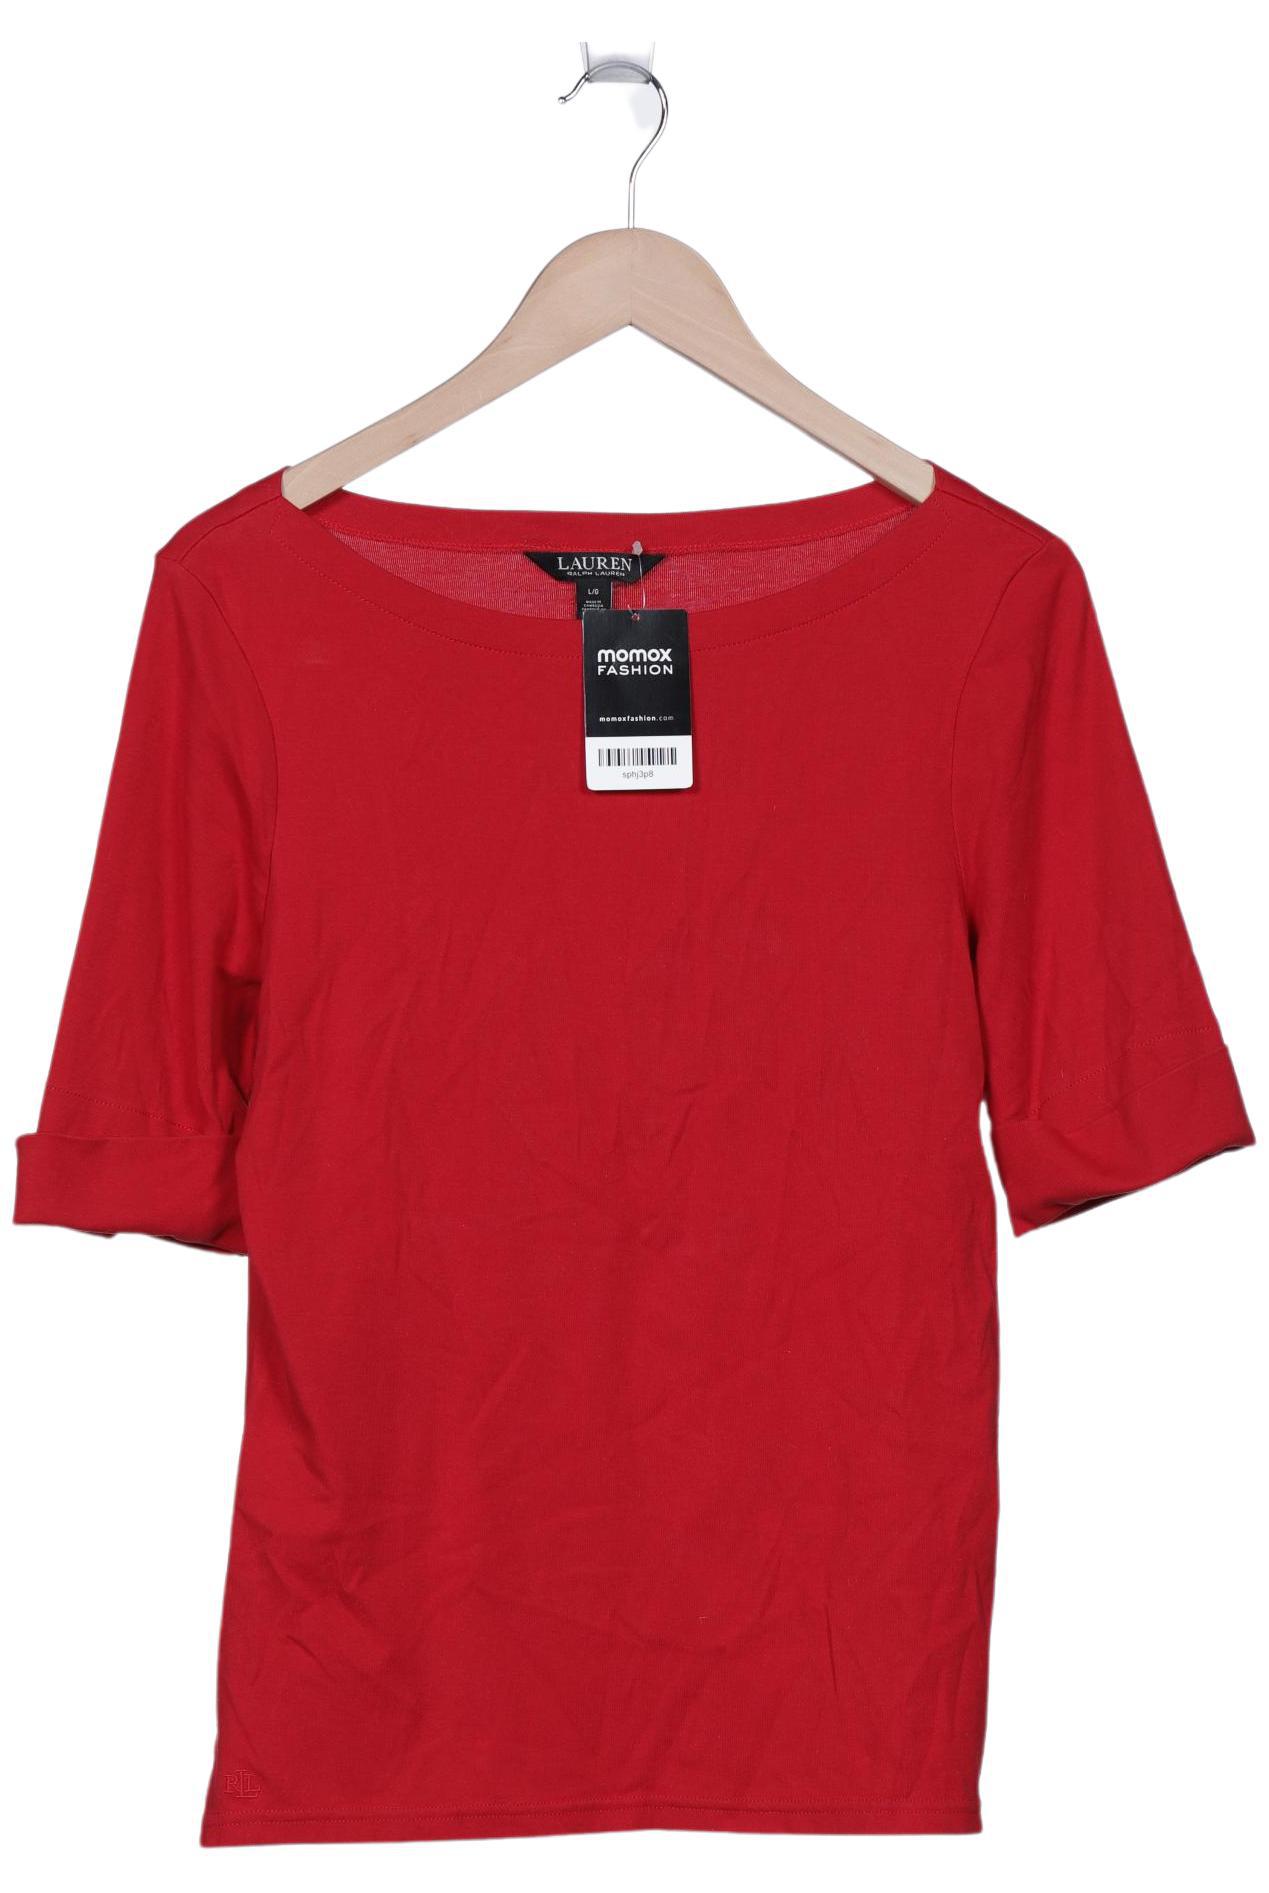 Lauren Ralph Lauren Damen T-Shirt, rot, Gr. 42 von Lauren Ralph Lauren